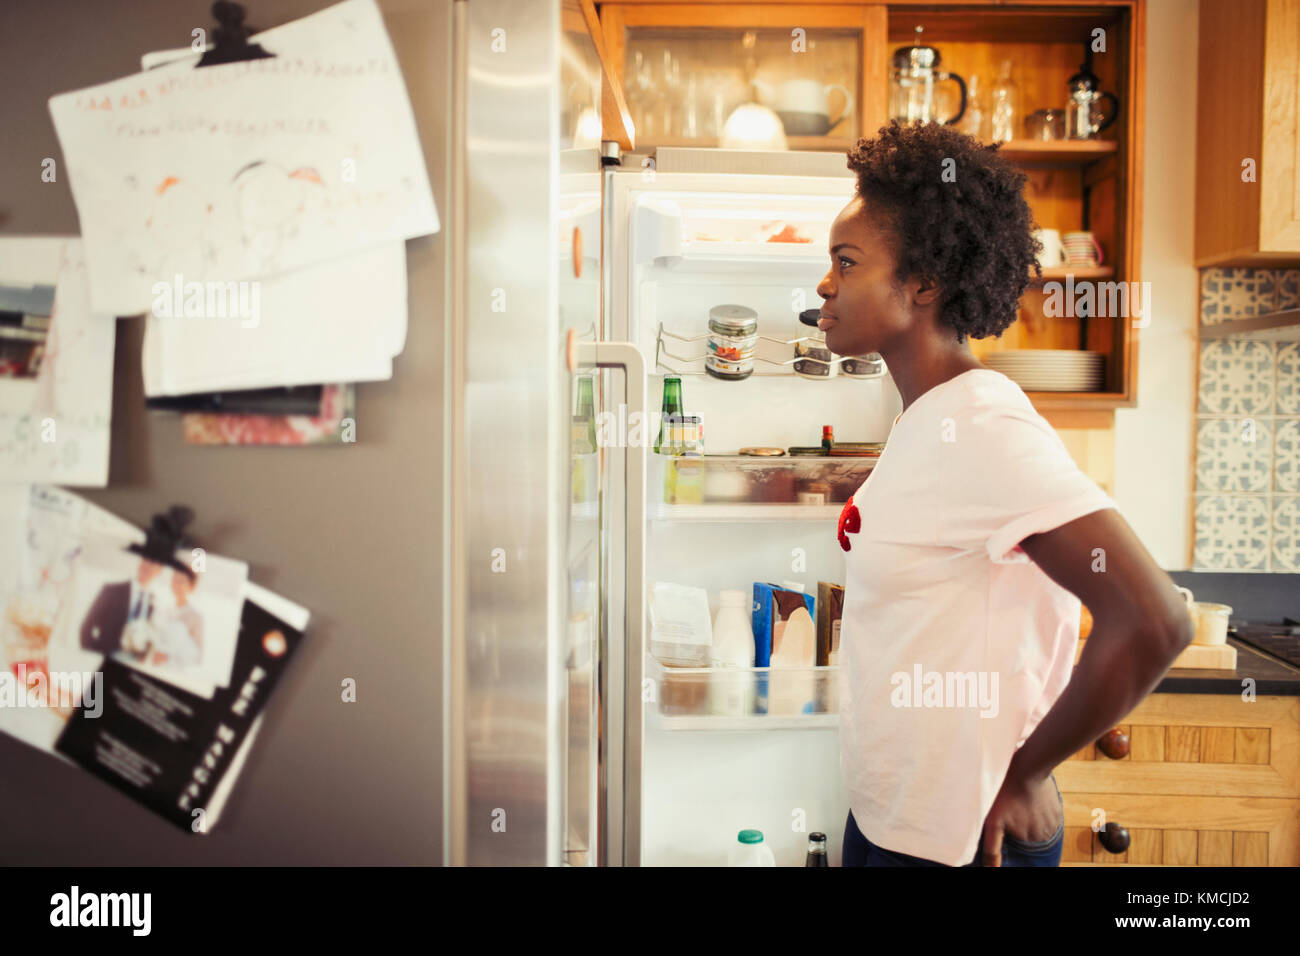 Une femme affamée se piquant dans un réfrigérateur dans la cuisine Banque D'Images